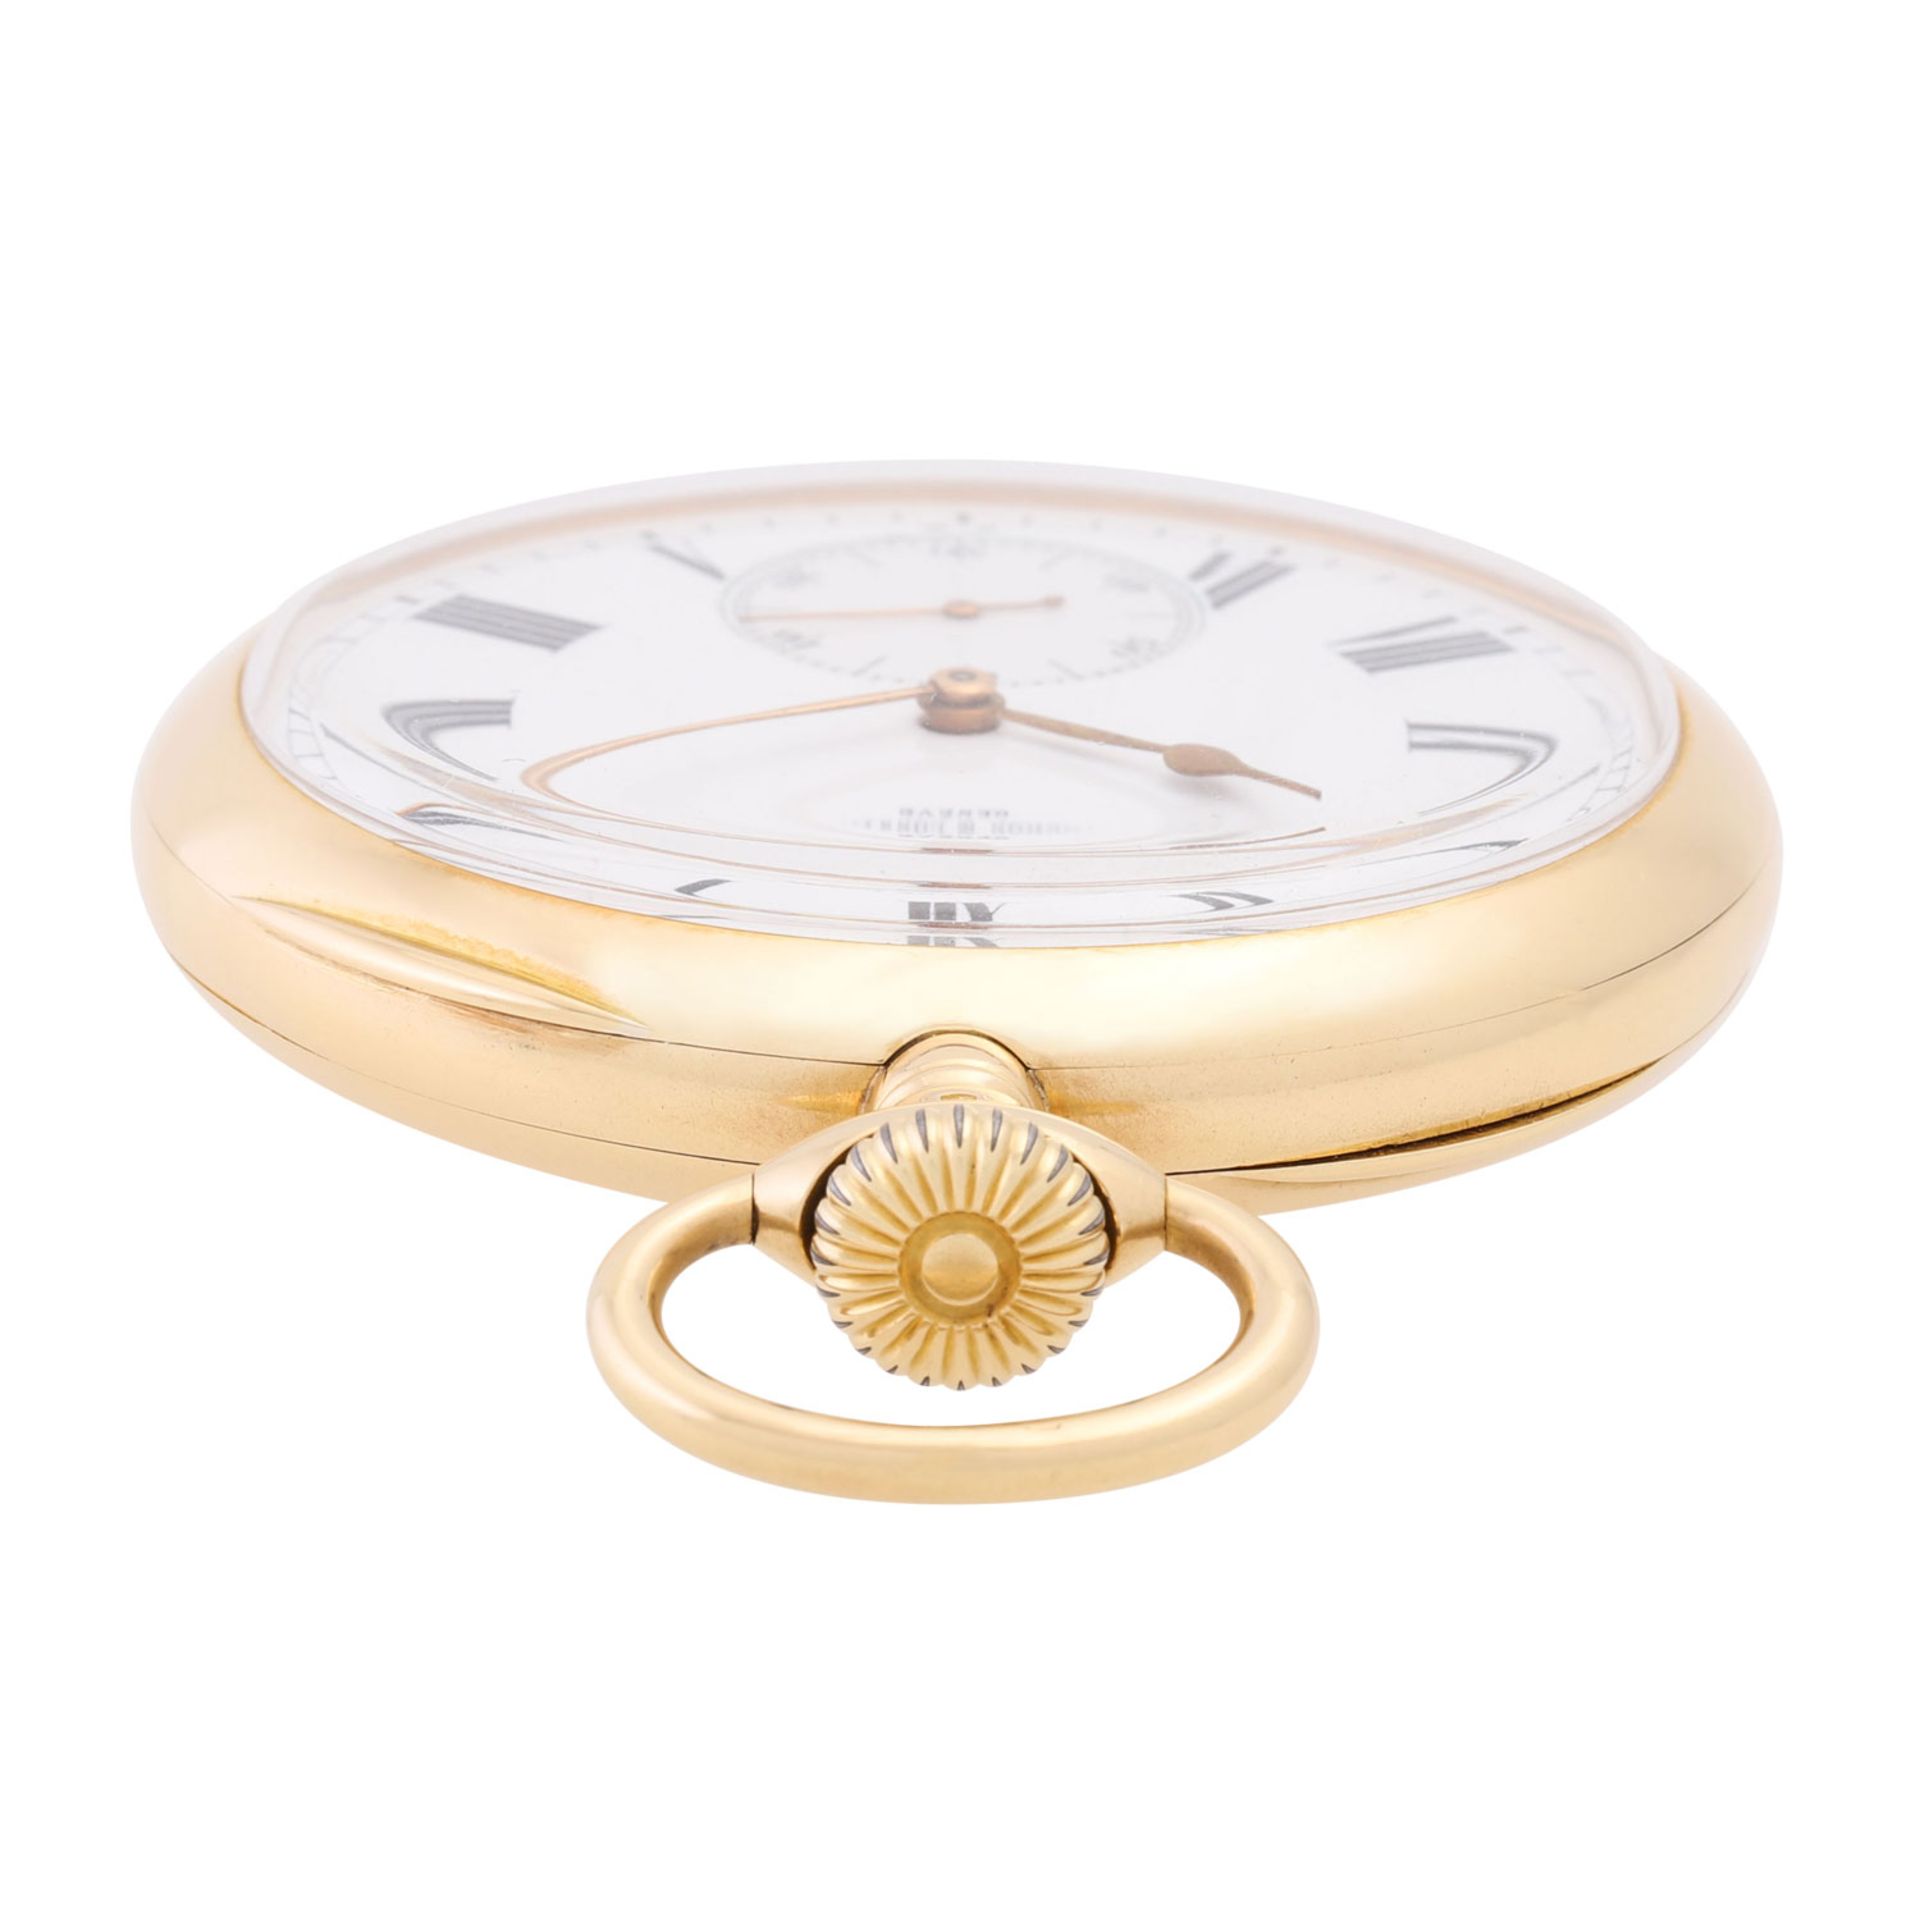 VACHERON CONSTANTIN große, schwere offene Taschenuhr "Chronometre Royal". - Bild 8 aus 9